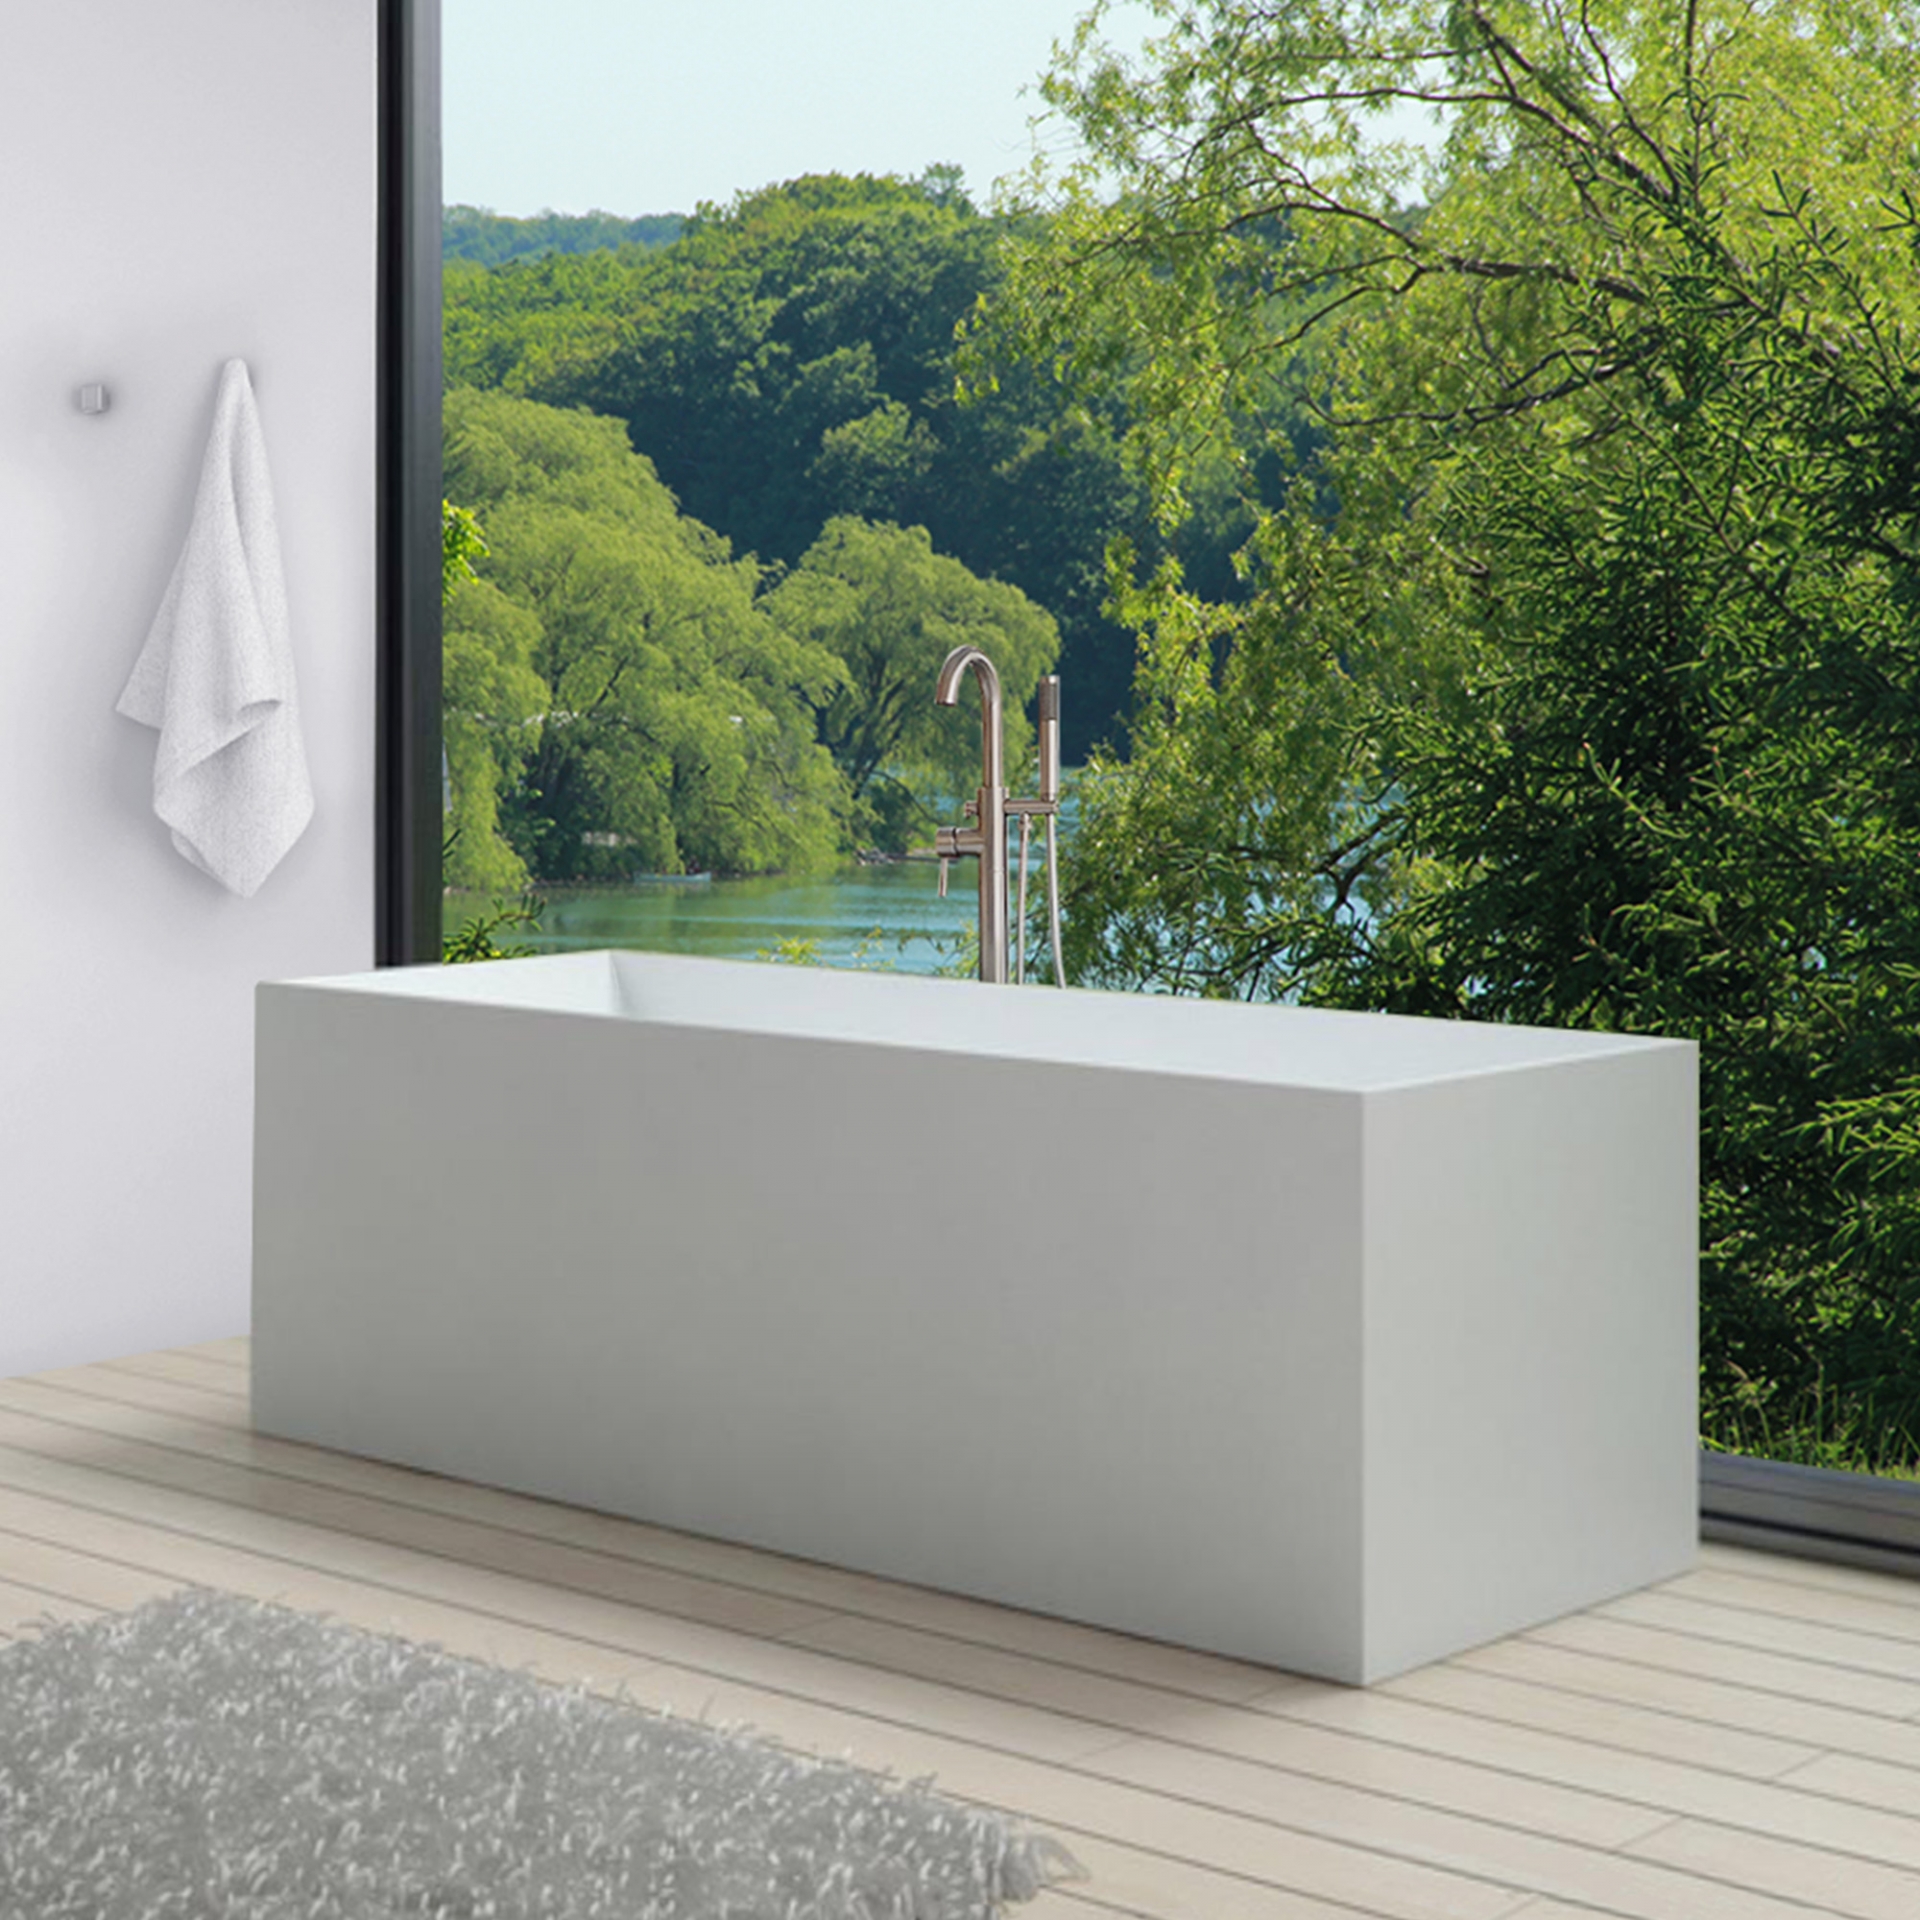 Bồn tắm hình chữ nhật dành cho người yêu thích phong cách minimalism. Bồn có kích thước 1.7 mét, tạo cảm giác cực kỳ thoải mái khi sử dụng. Với khung cảnh thiên nhiên tuyệt đẹp bên ngoài thì bạn chỉ cần chiếc bồn tắm đơn giản như thế này là đủ.